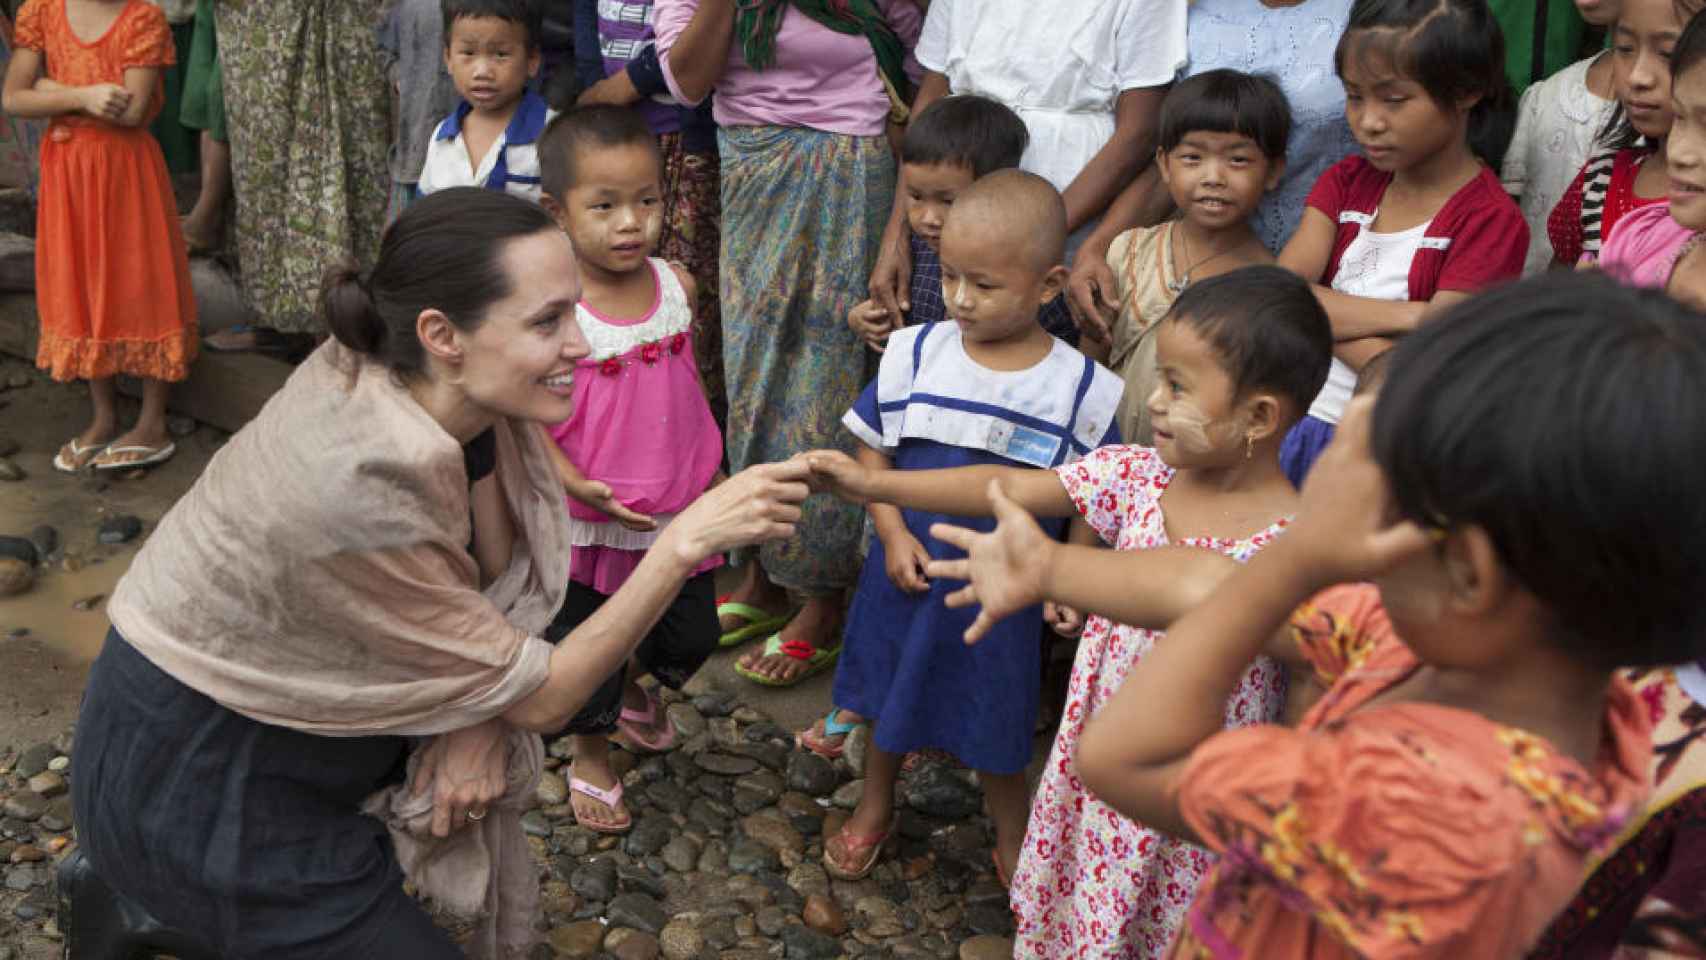 Jolie es embajadora de la ONU y colabora en varias causas humanitarias.